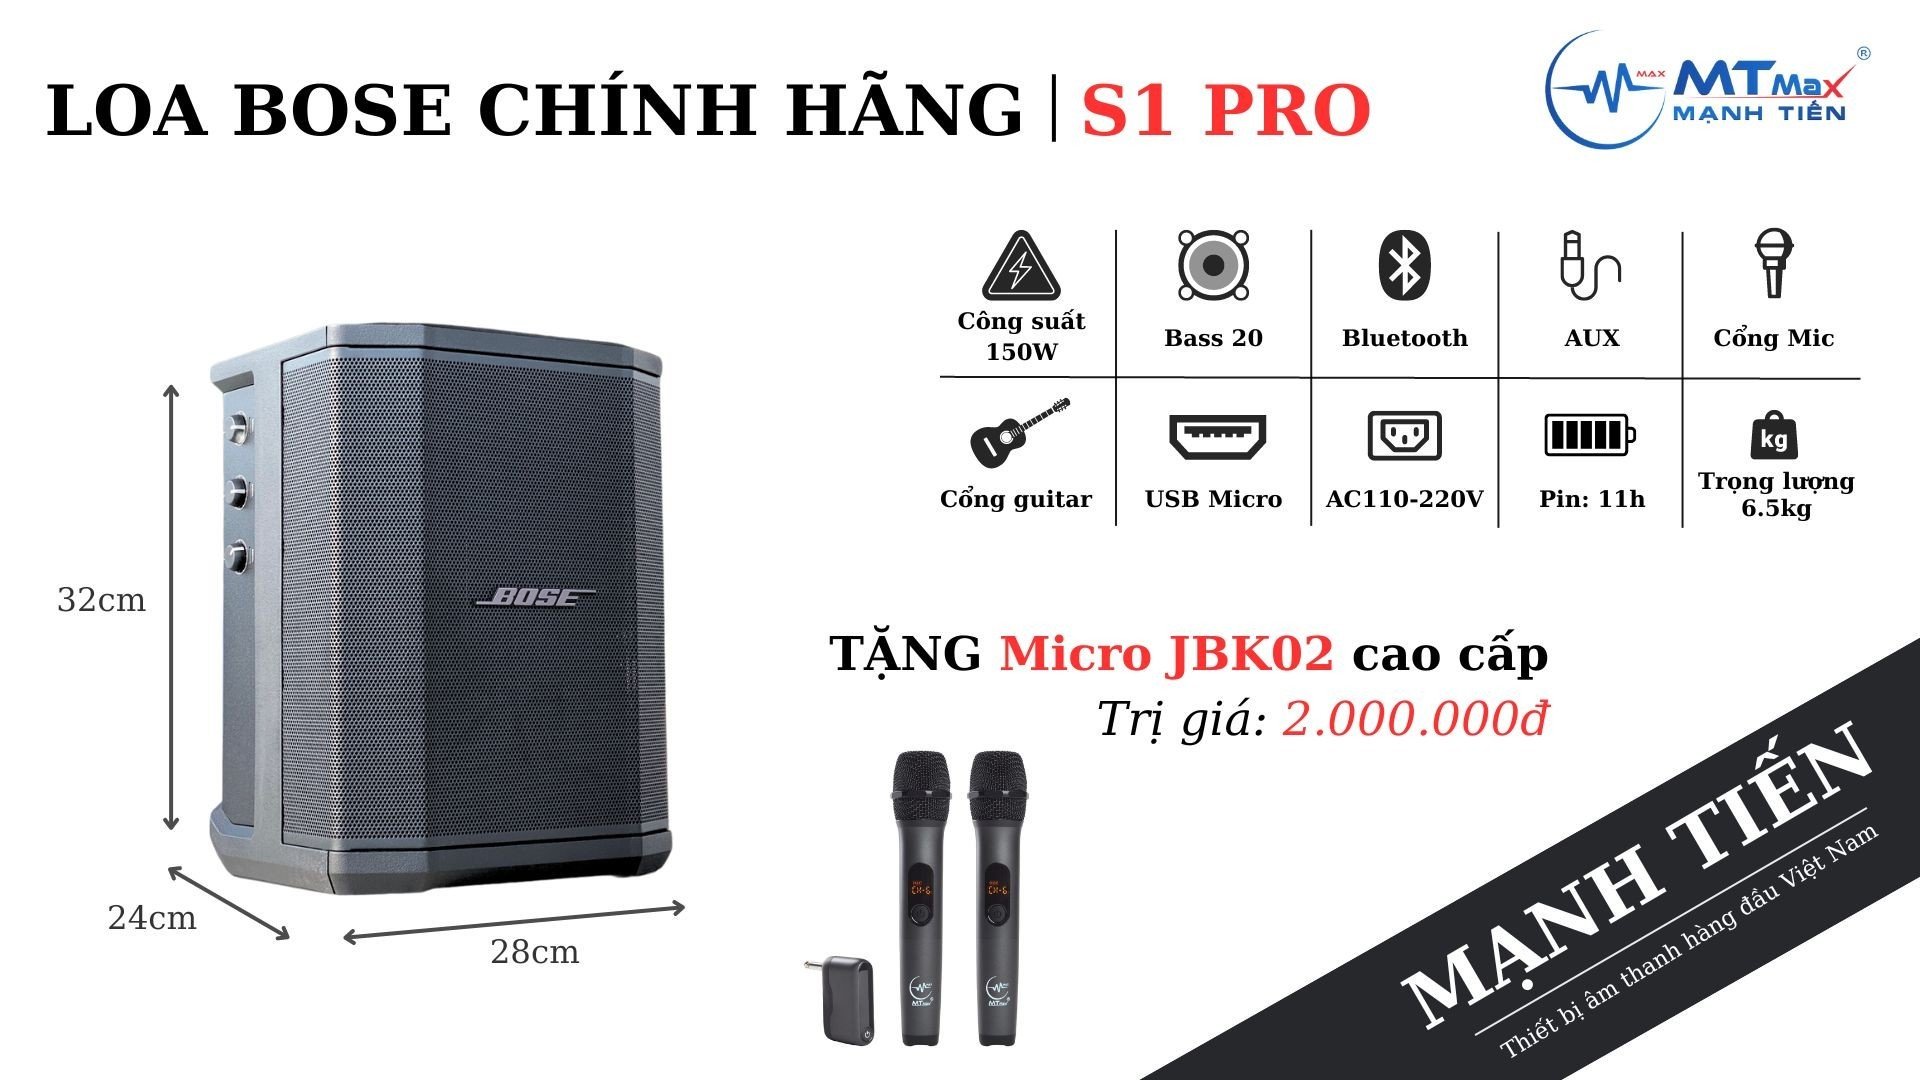 (Tặng Kèm Mic JBK02) Loa  S1 Pro Tặng Mic Cao Cấp - 150W Mixer 3 Kênh, Bluetooth, AUX, Hệ Thống PA All-In-One Hàng Chính Hãng